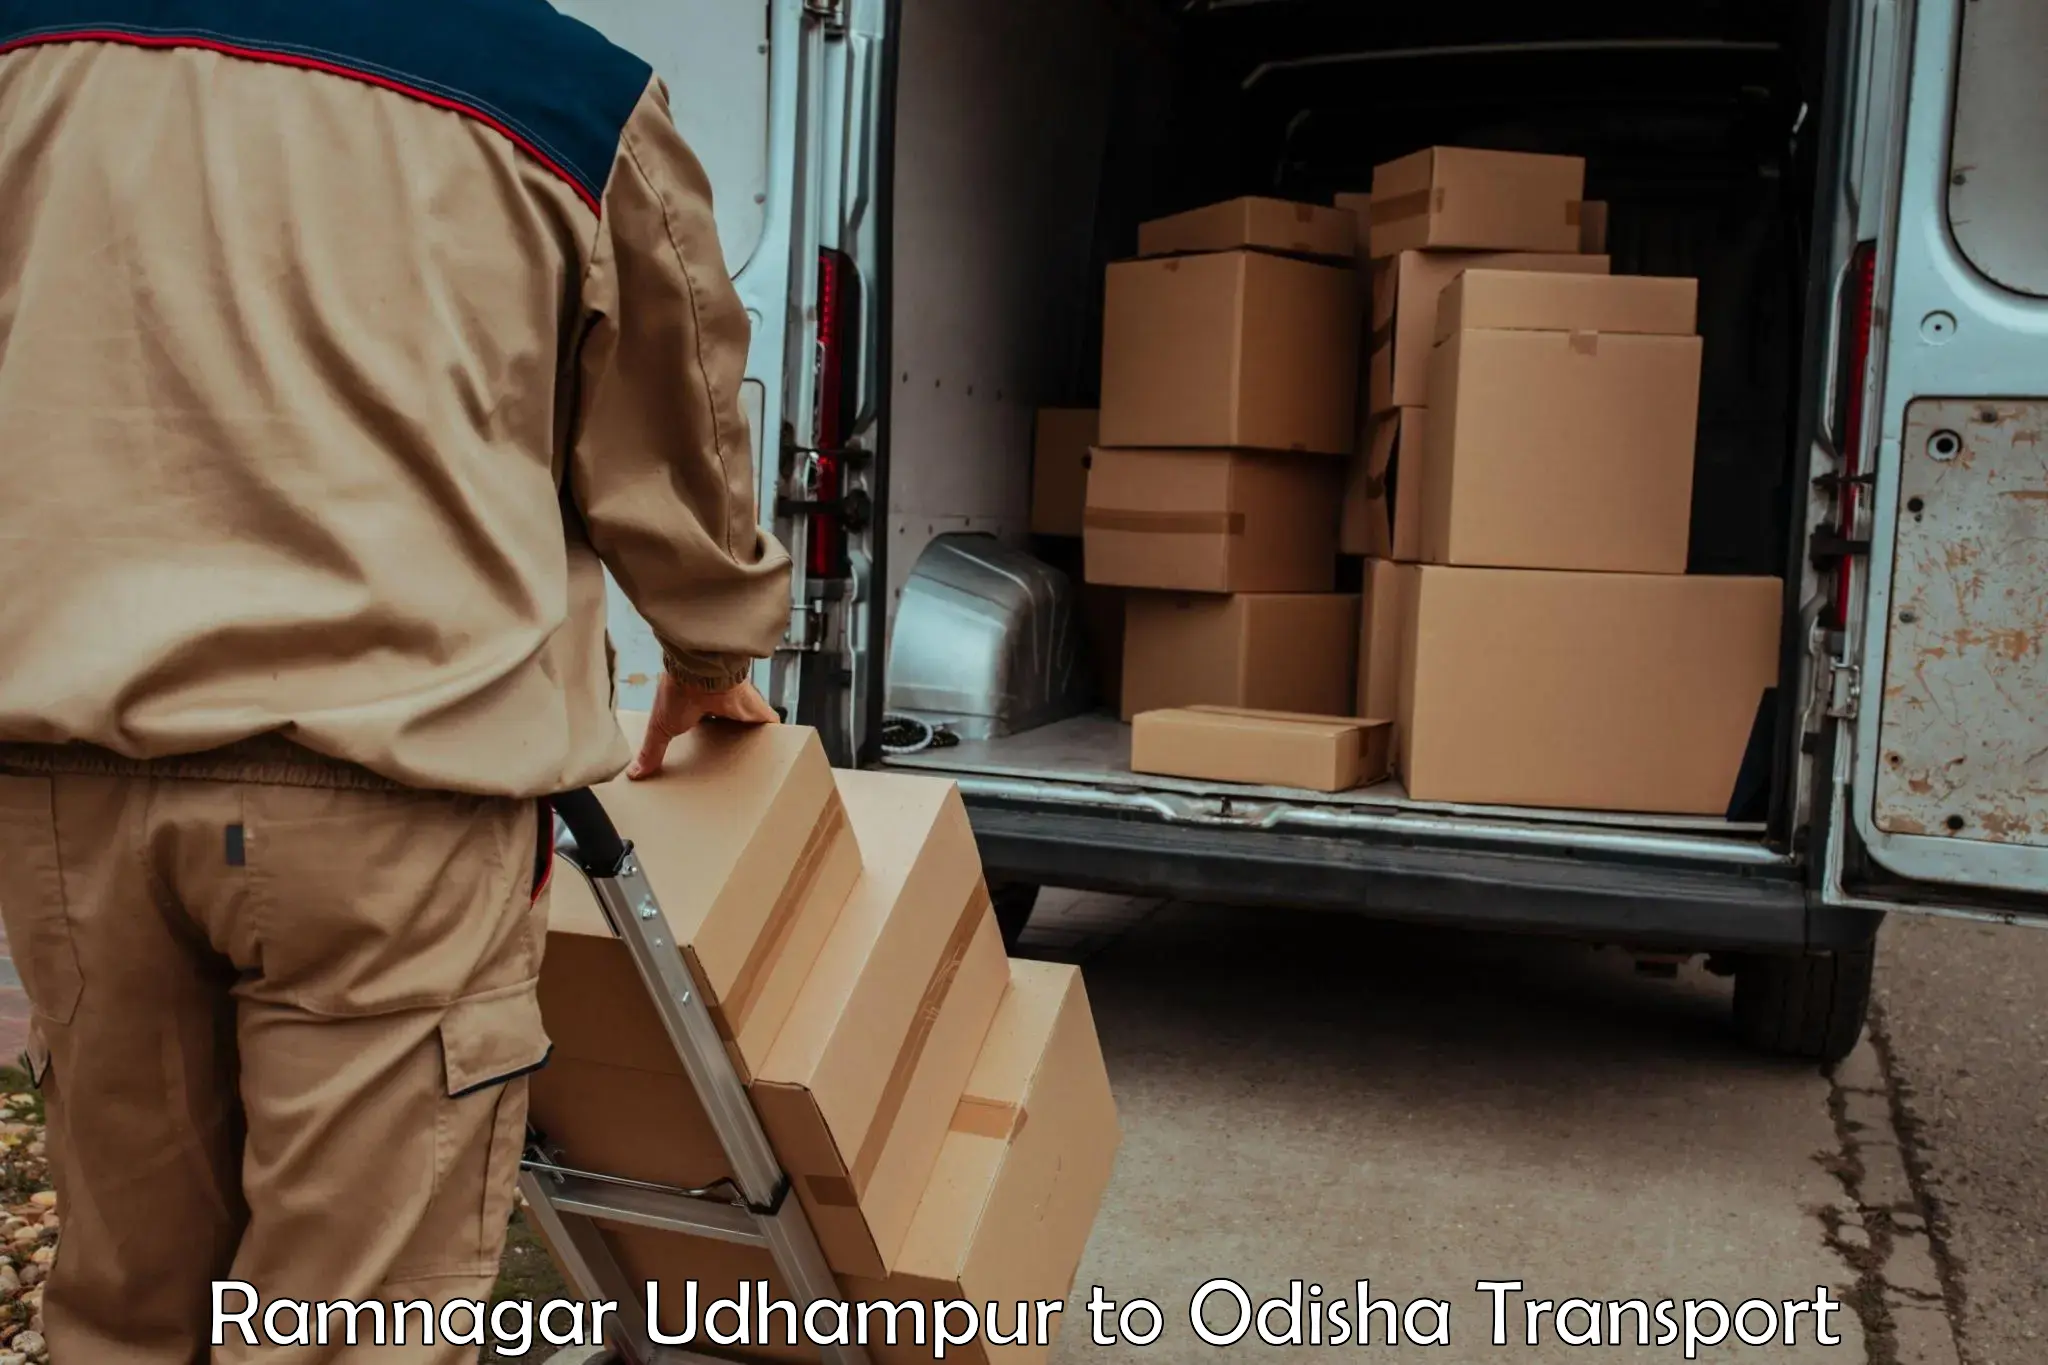 Bike shipping service Ramnagar Udhampur to Nirakarpur